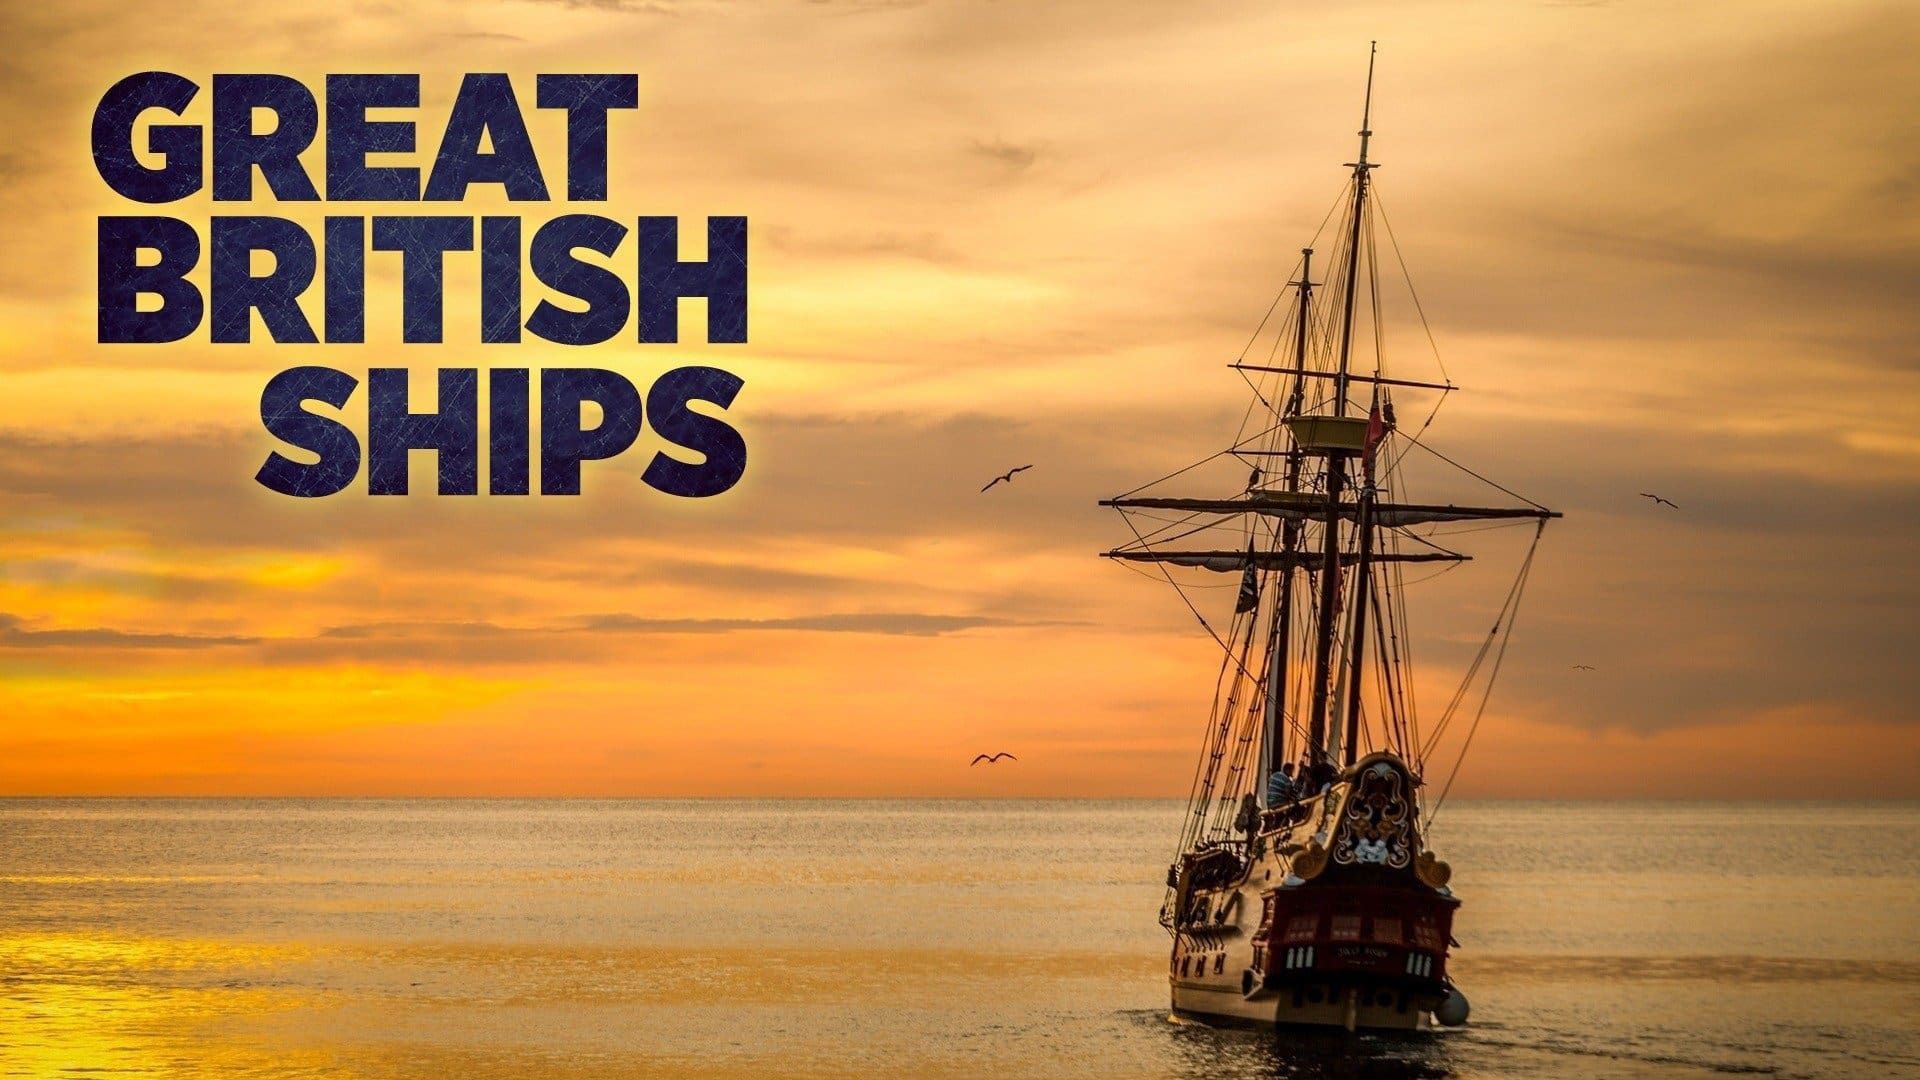 Great British Ships Backdrop